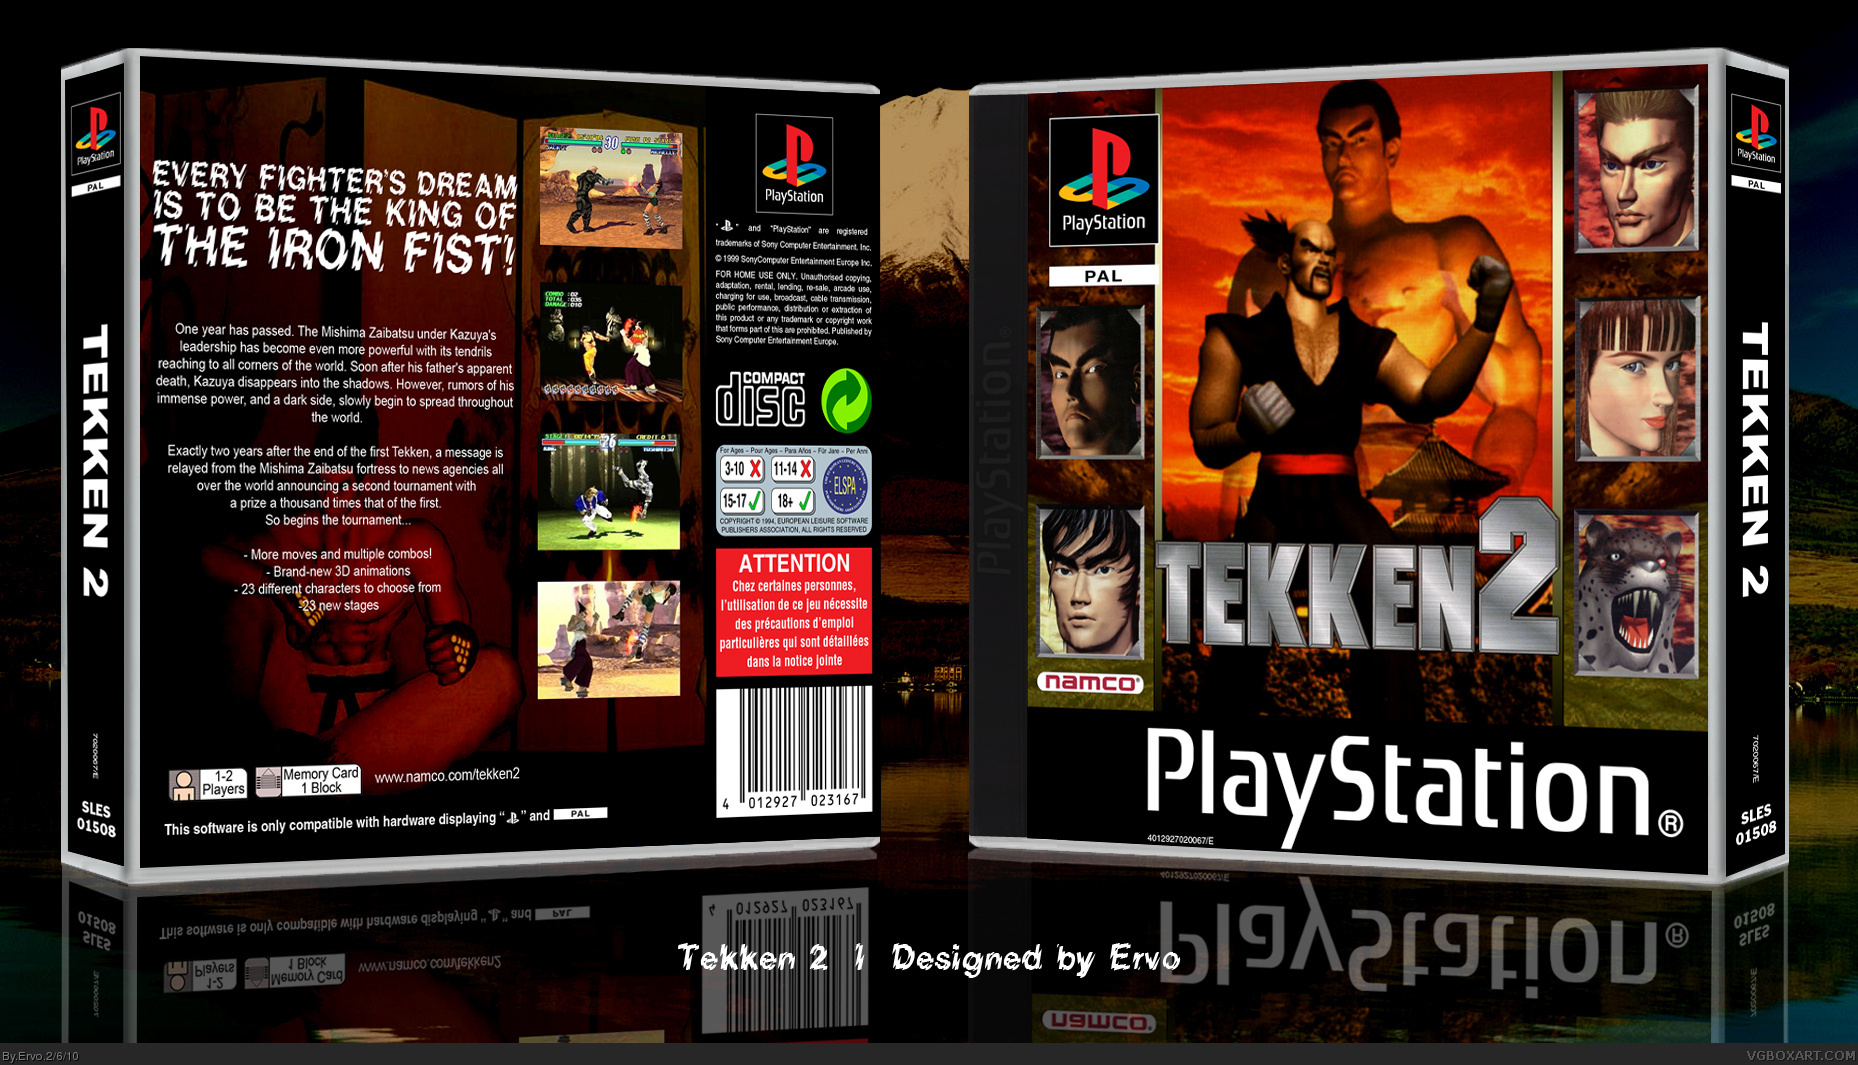 Tekken 2 box cover